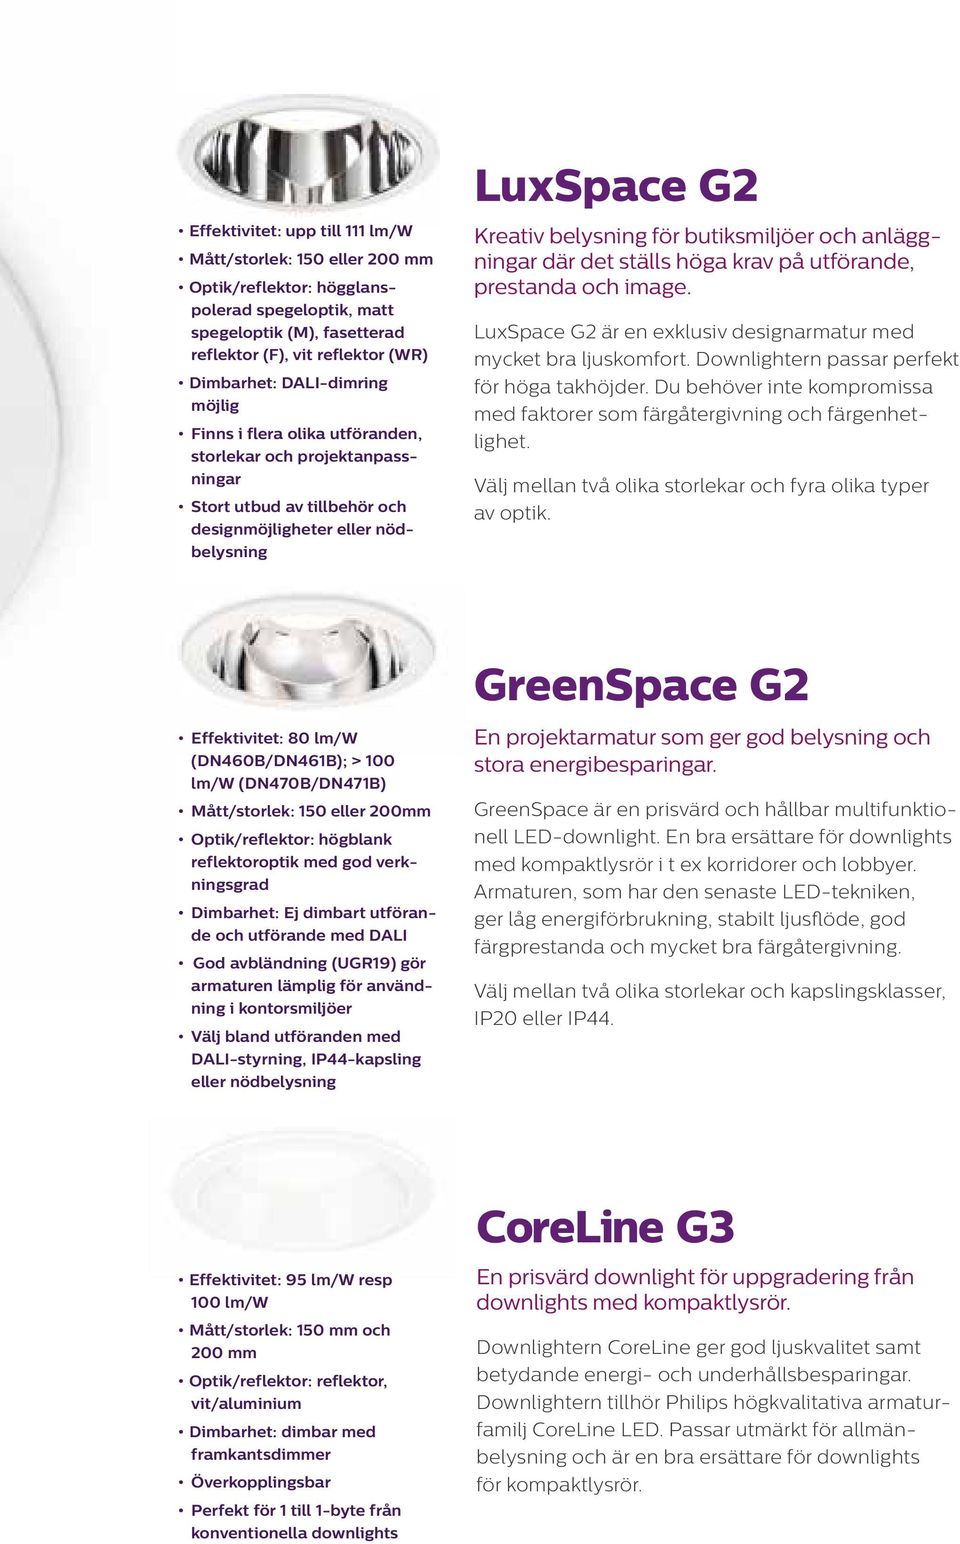 anläggningar där det ställs höga krav på utförande, prestanda och image. LuxSpace G2 är en exklusiv designarmatur med mycket bra ljuskomfort. Downlightern passar perfekt för höga takhöjder.